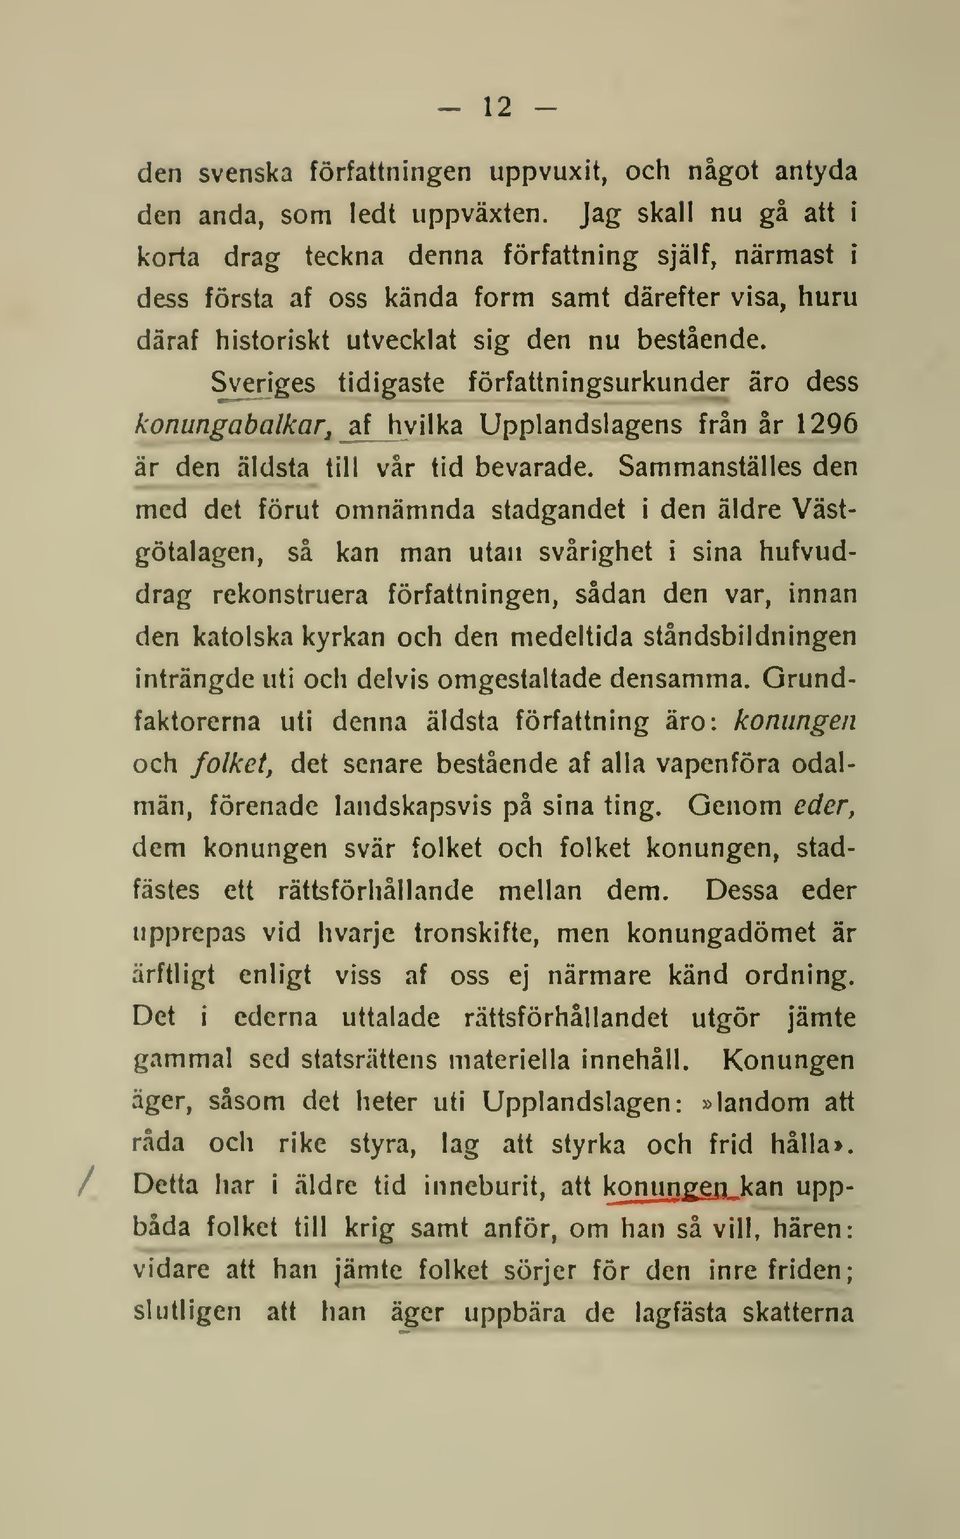 Sveriges tidigaste författningsurkunder äro dess konungabalkarj af hvilka Upplandslagens från år 1296 är den äldsta till vår tid bevarade.